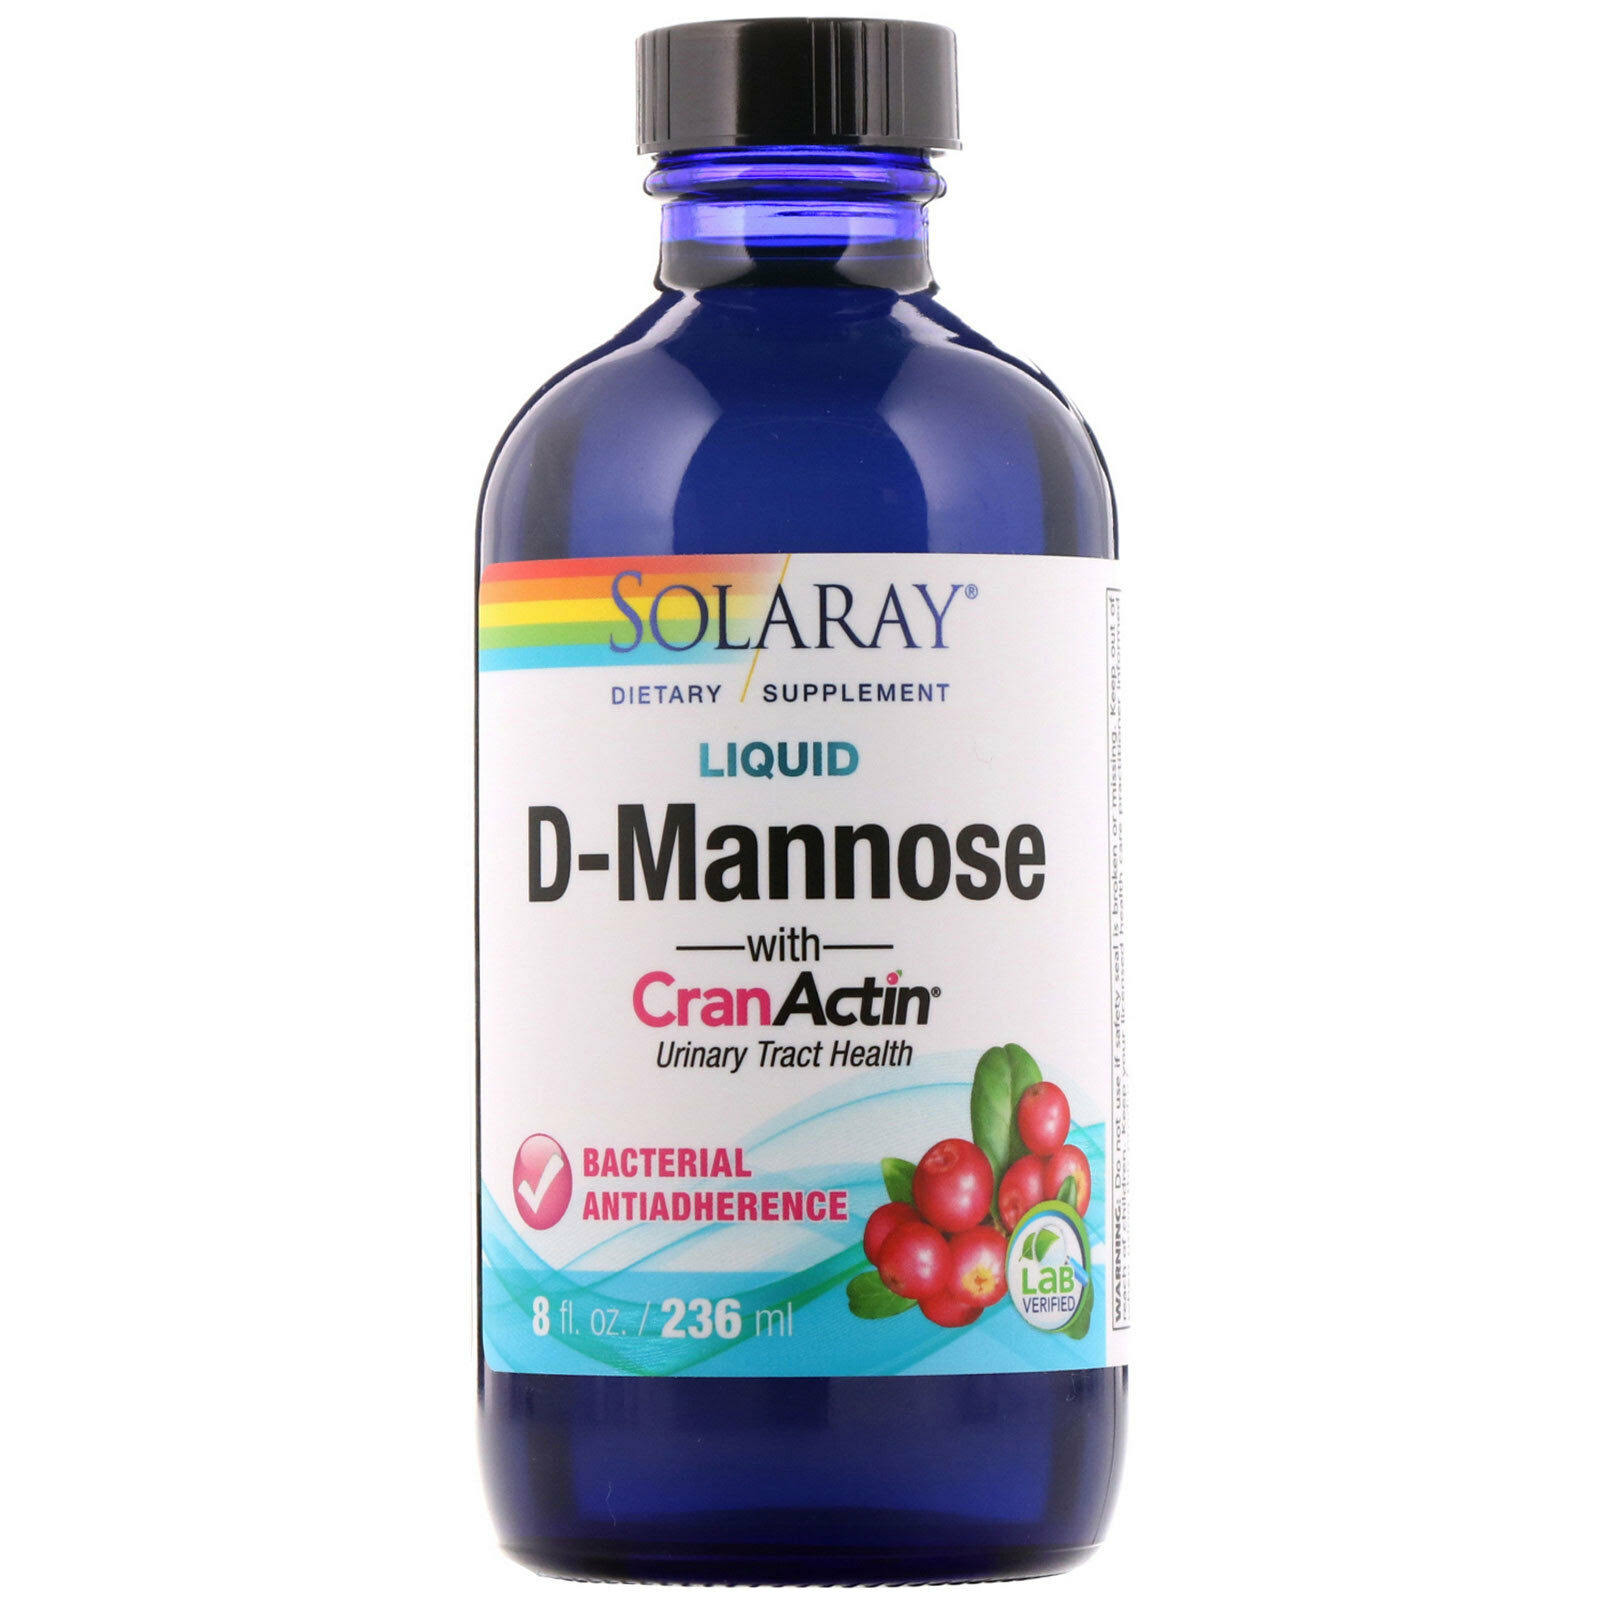 Solaray liquid d-mannose with cranactin 8 fl oz 236 ml